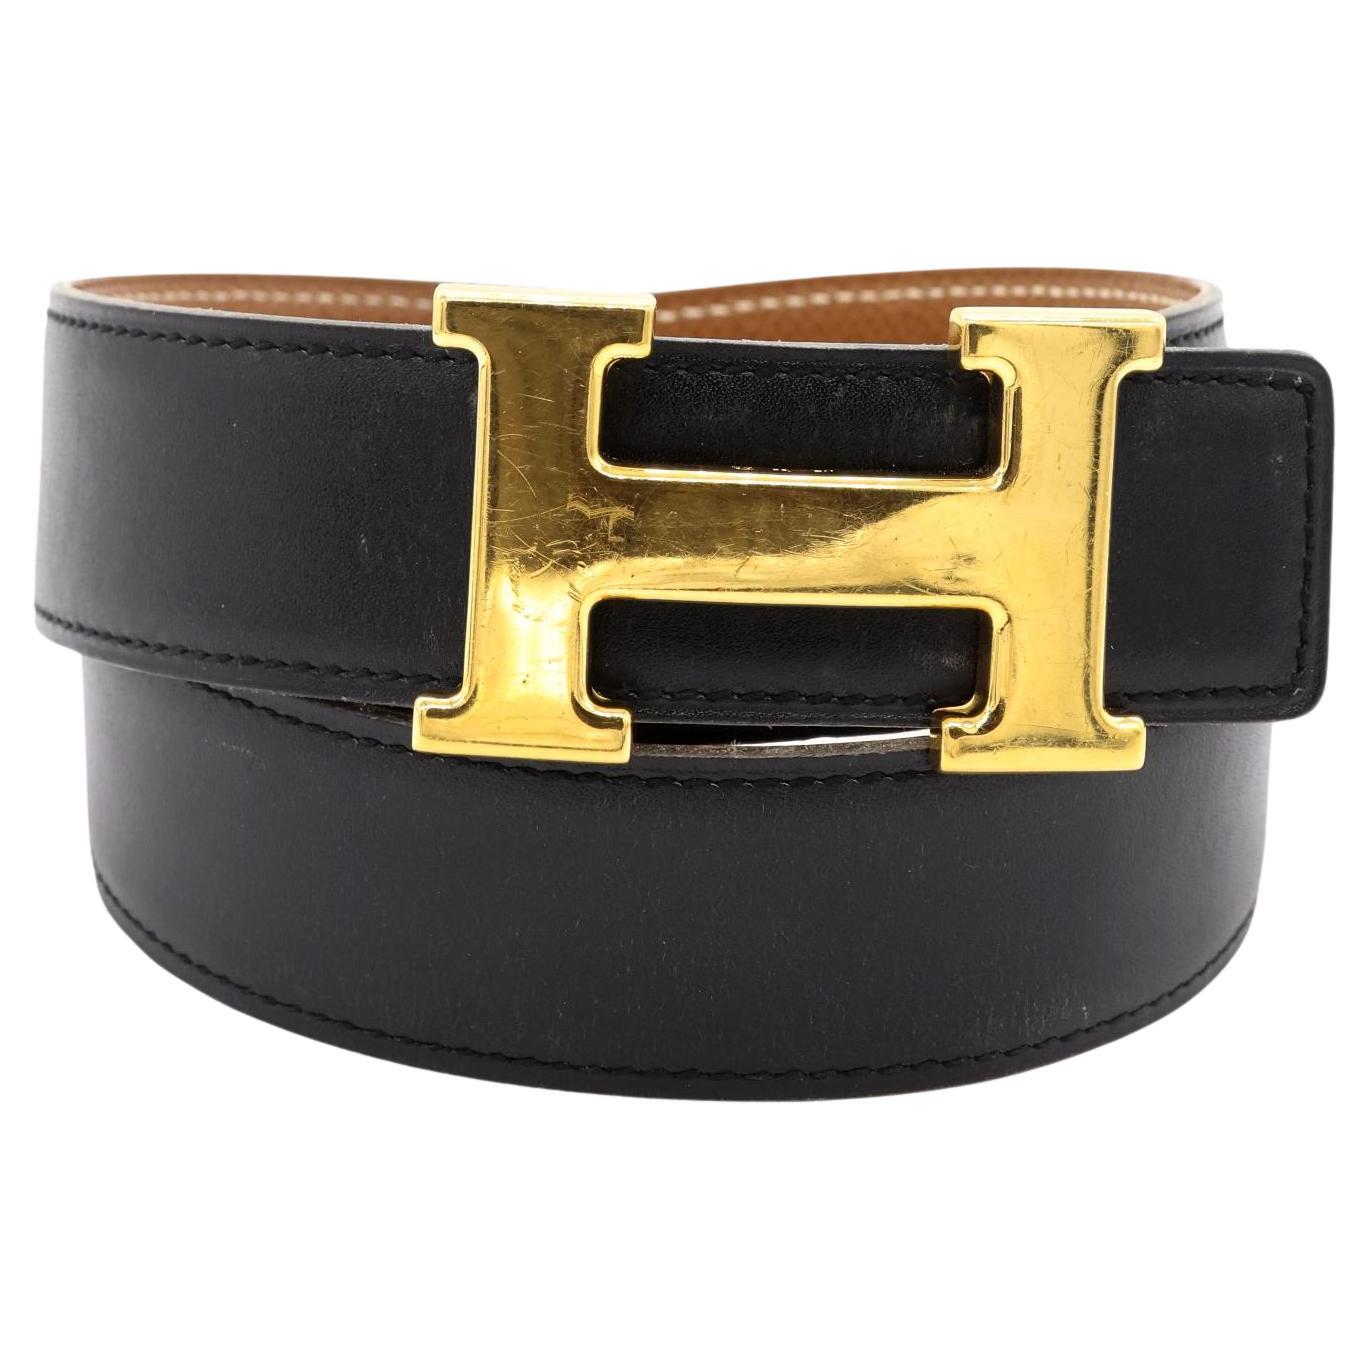 100 Best Hermes Belt Outfit ideas  hermes belt outfit, hermes belt, fashion